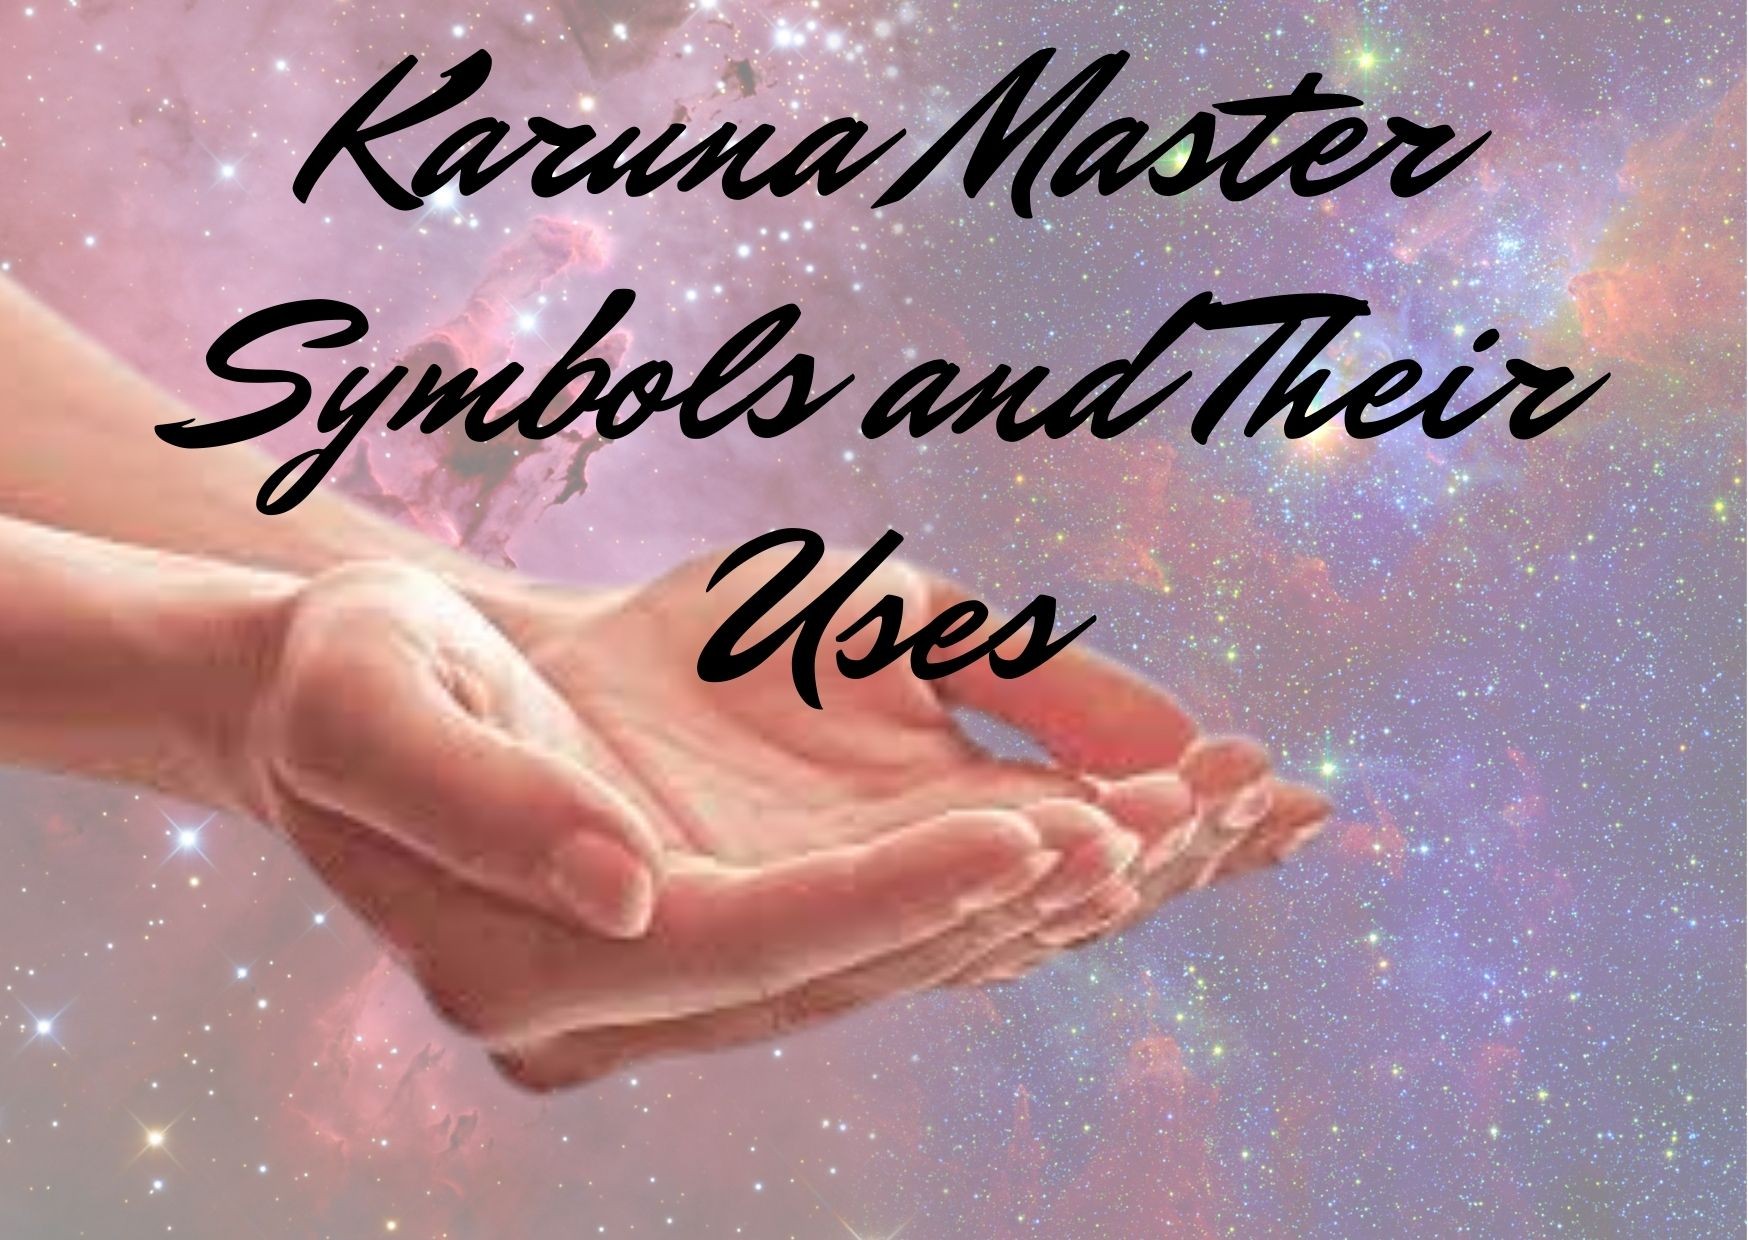 Karuna Master Symbols and Their Uses